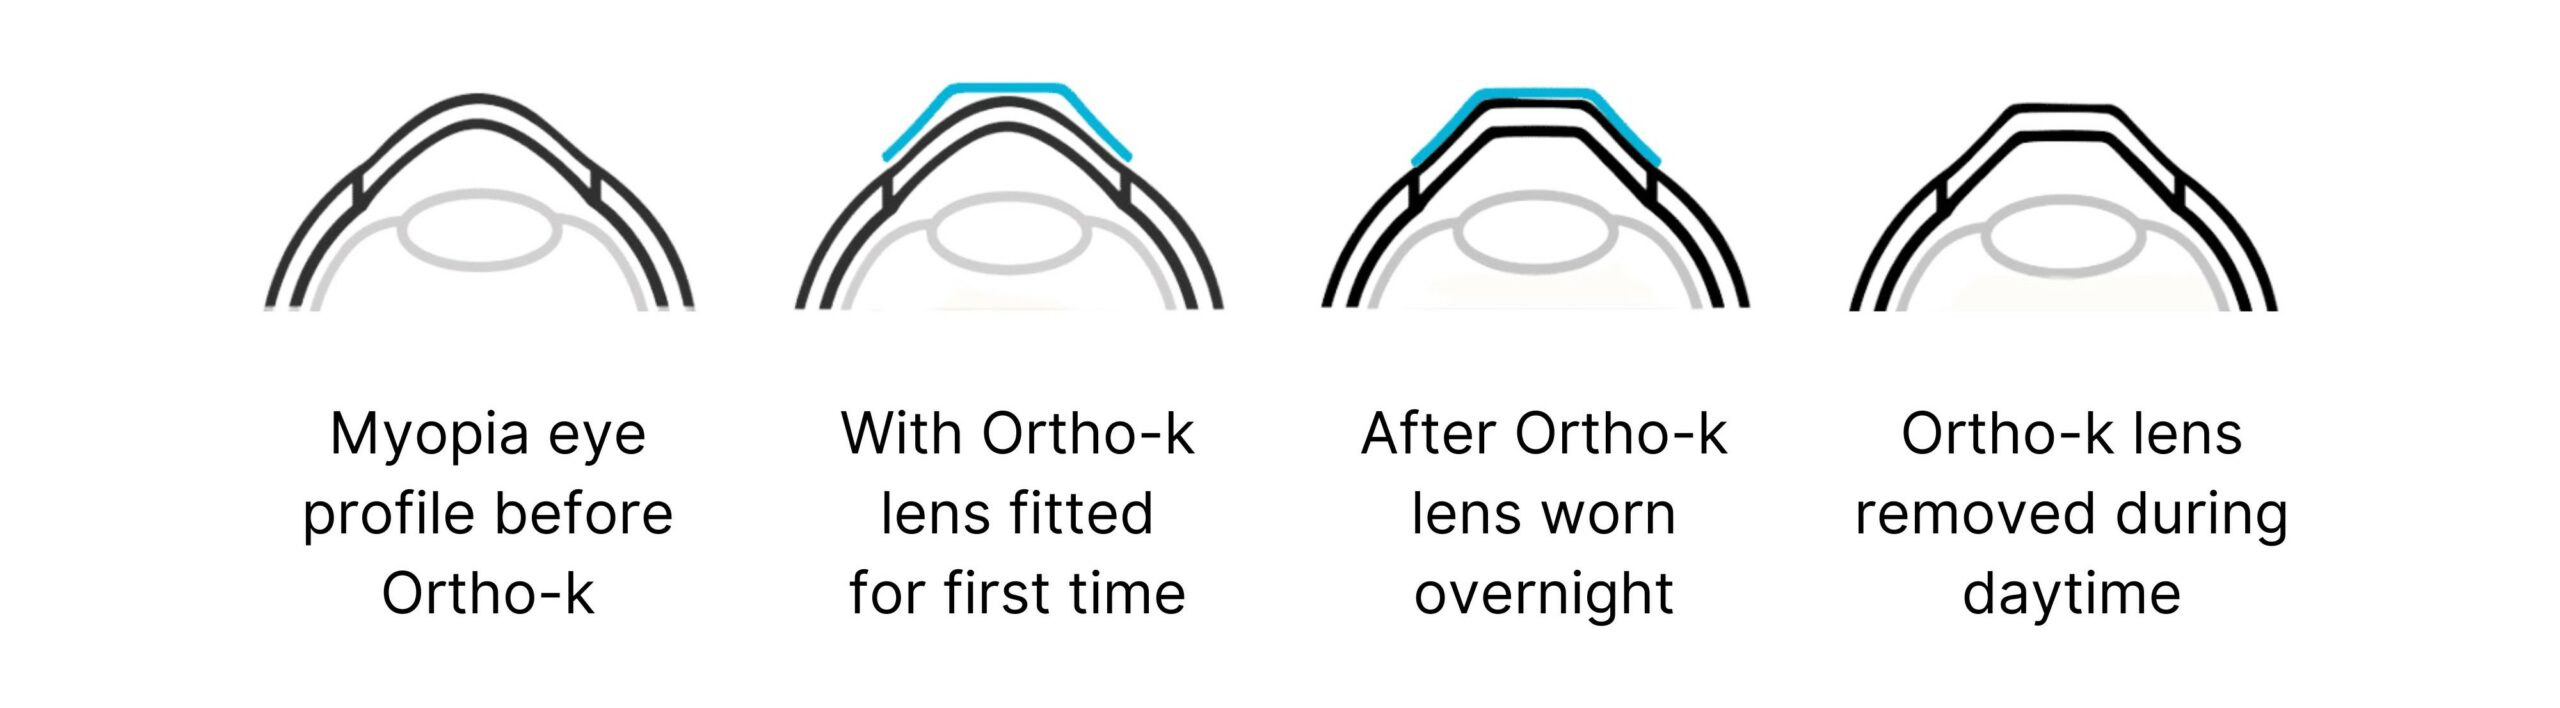 Ortho k lens scaled